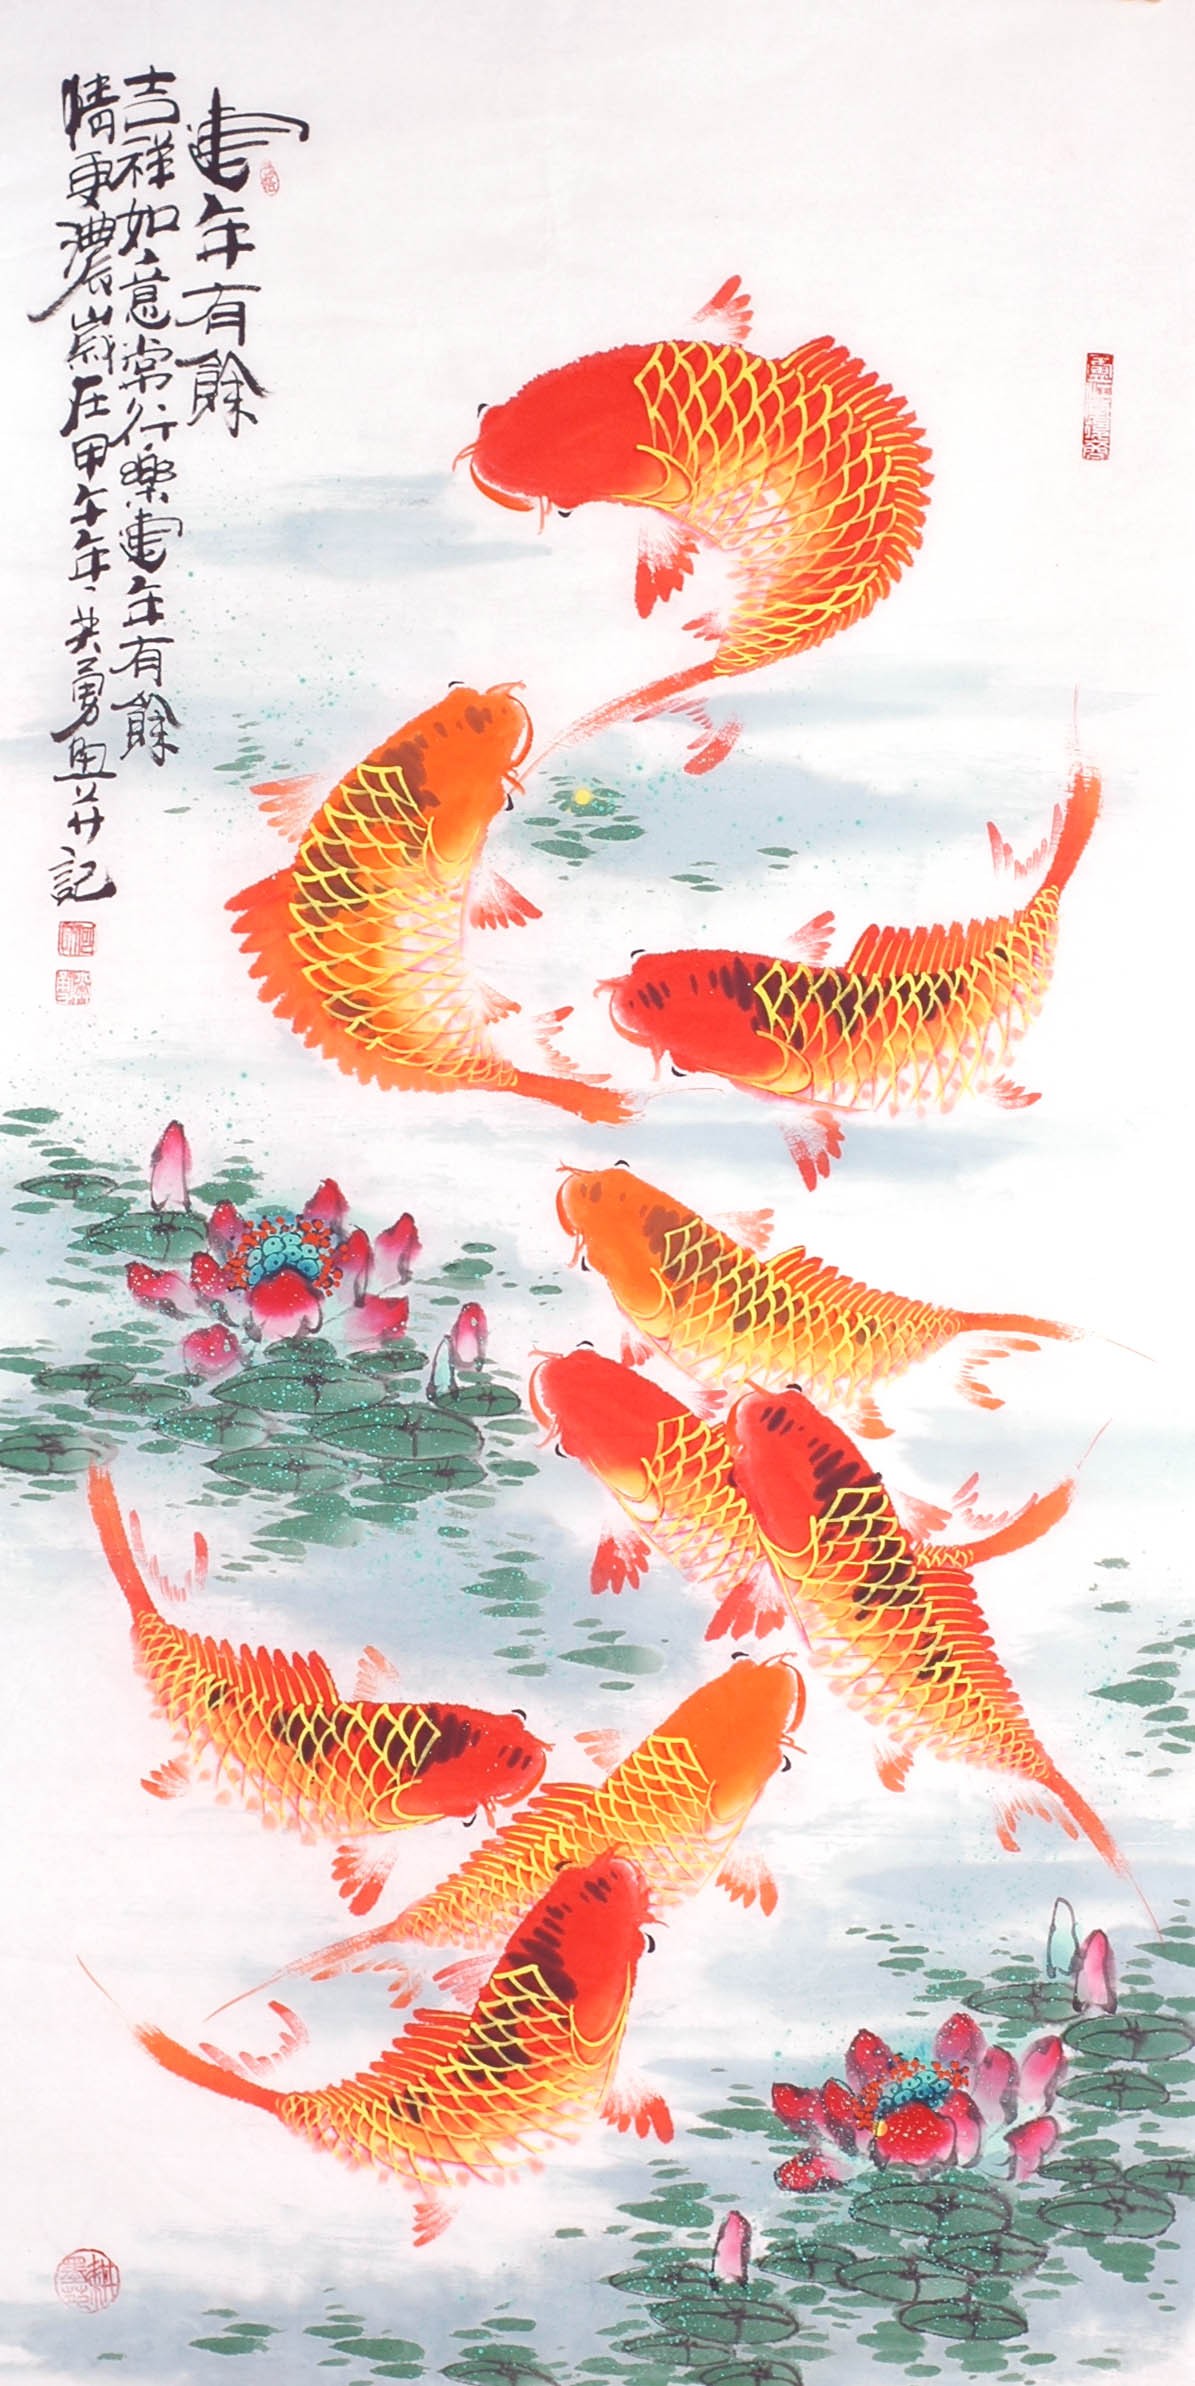 Chinese Fish Painting - CNAG013148